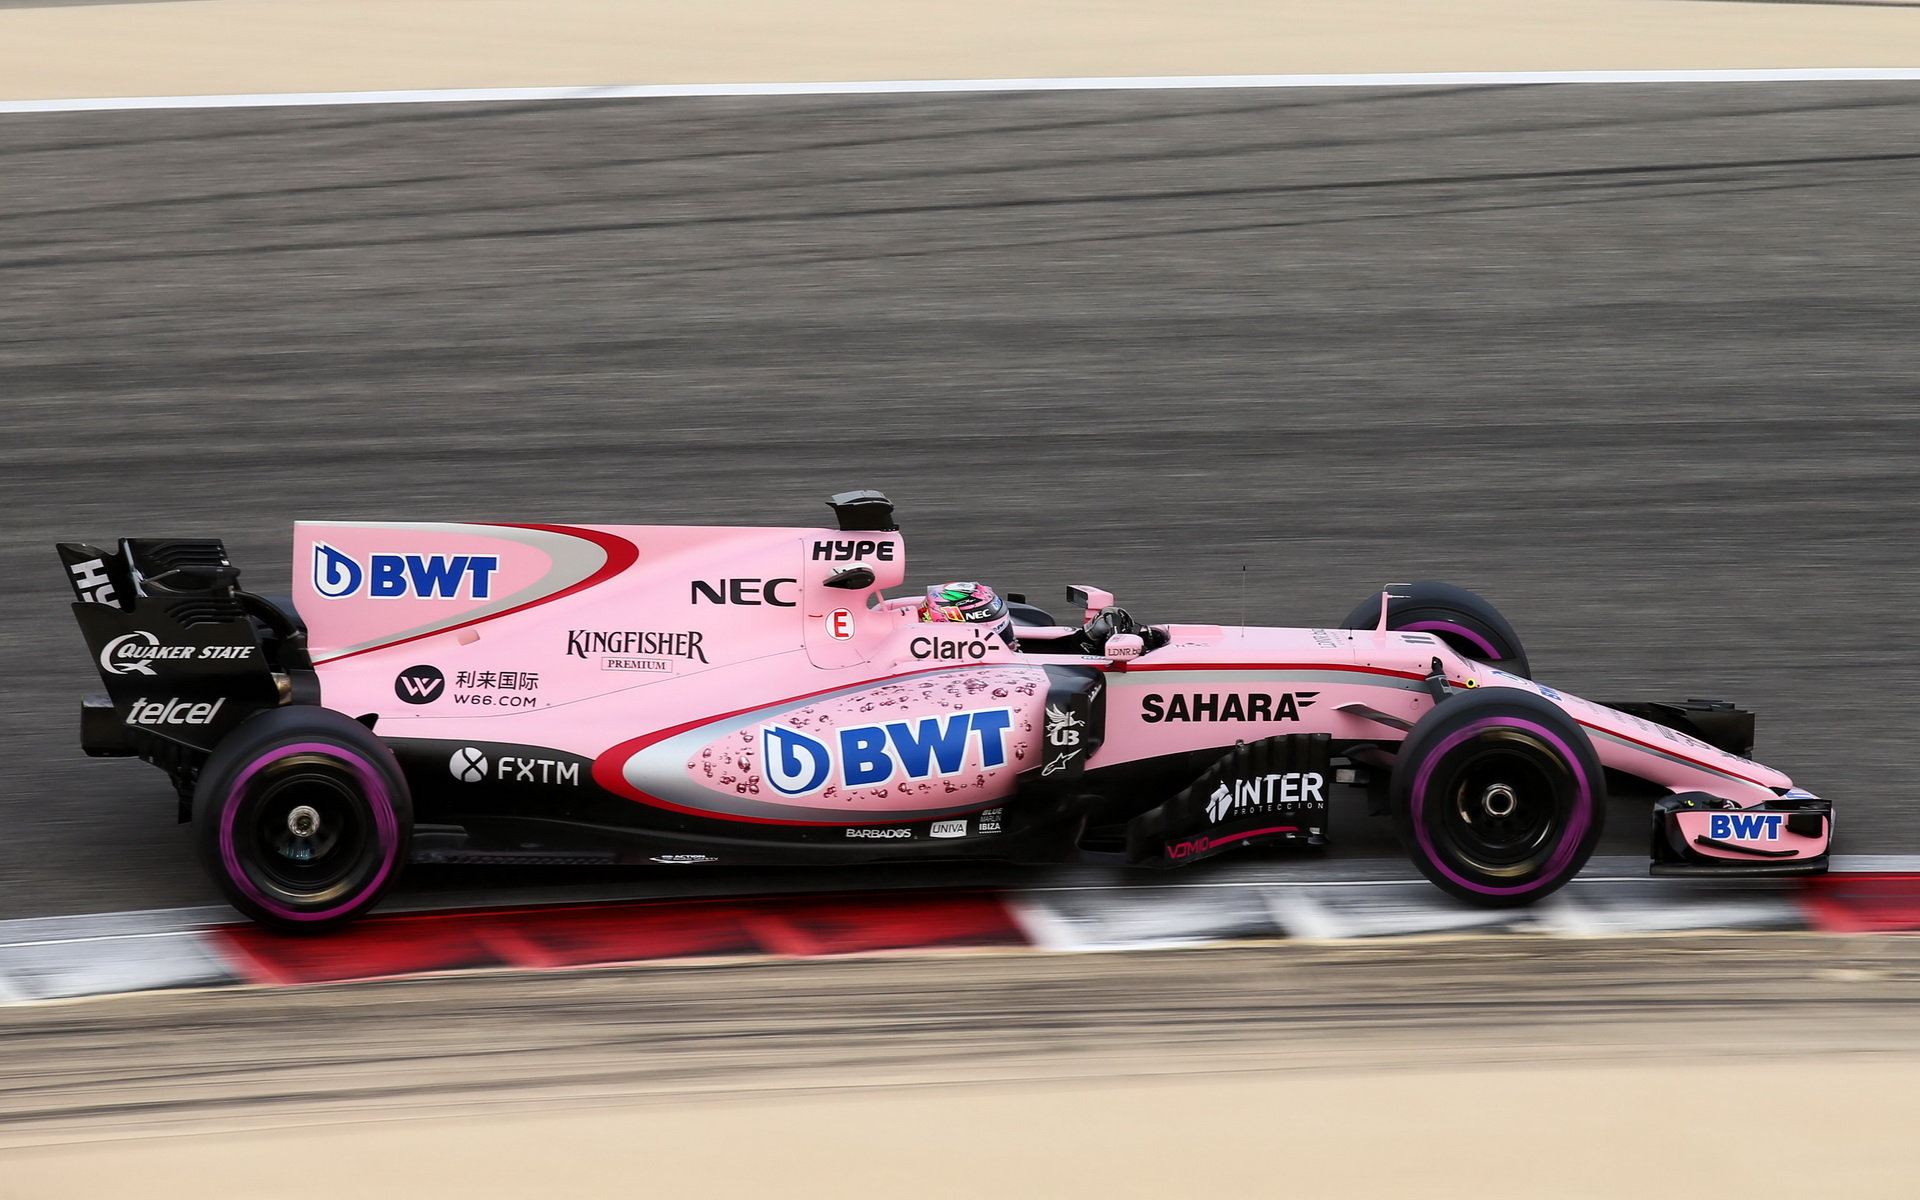 Force India sbírá body, ale spokojenost chybí